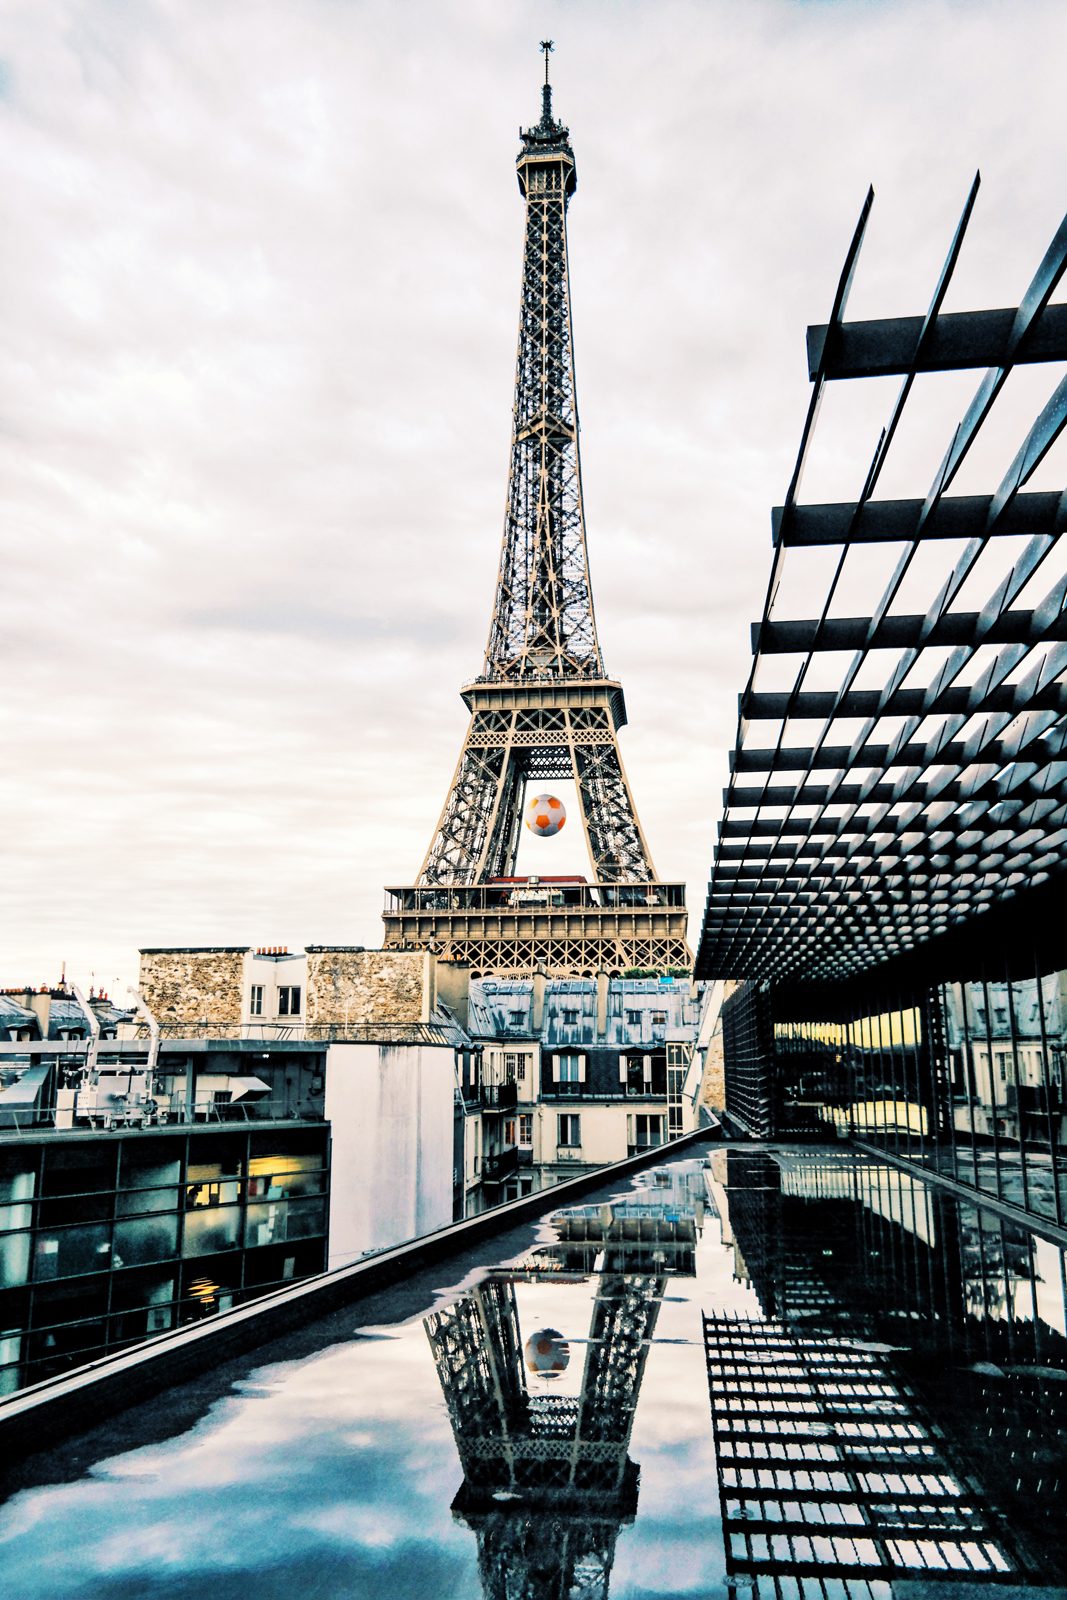 La Tour Eiffel Tower depuis le toit terrasse du Musée du Quai Branly Jacques Chirac museum rooftop paris jeu de reflet photo du mois by usofparis blog